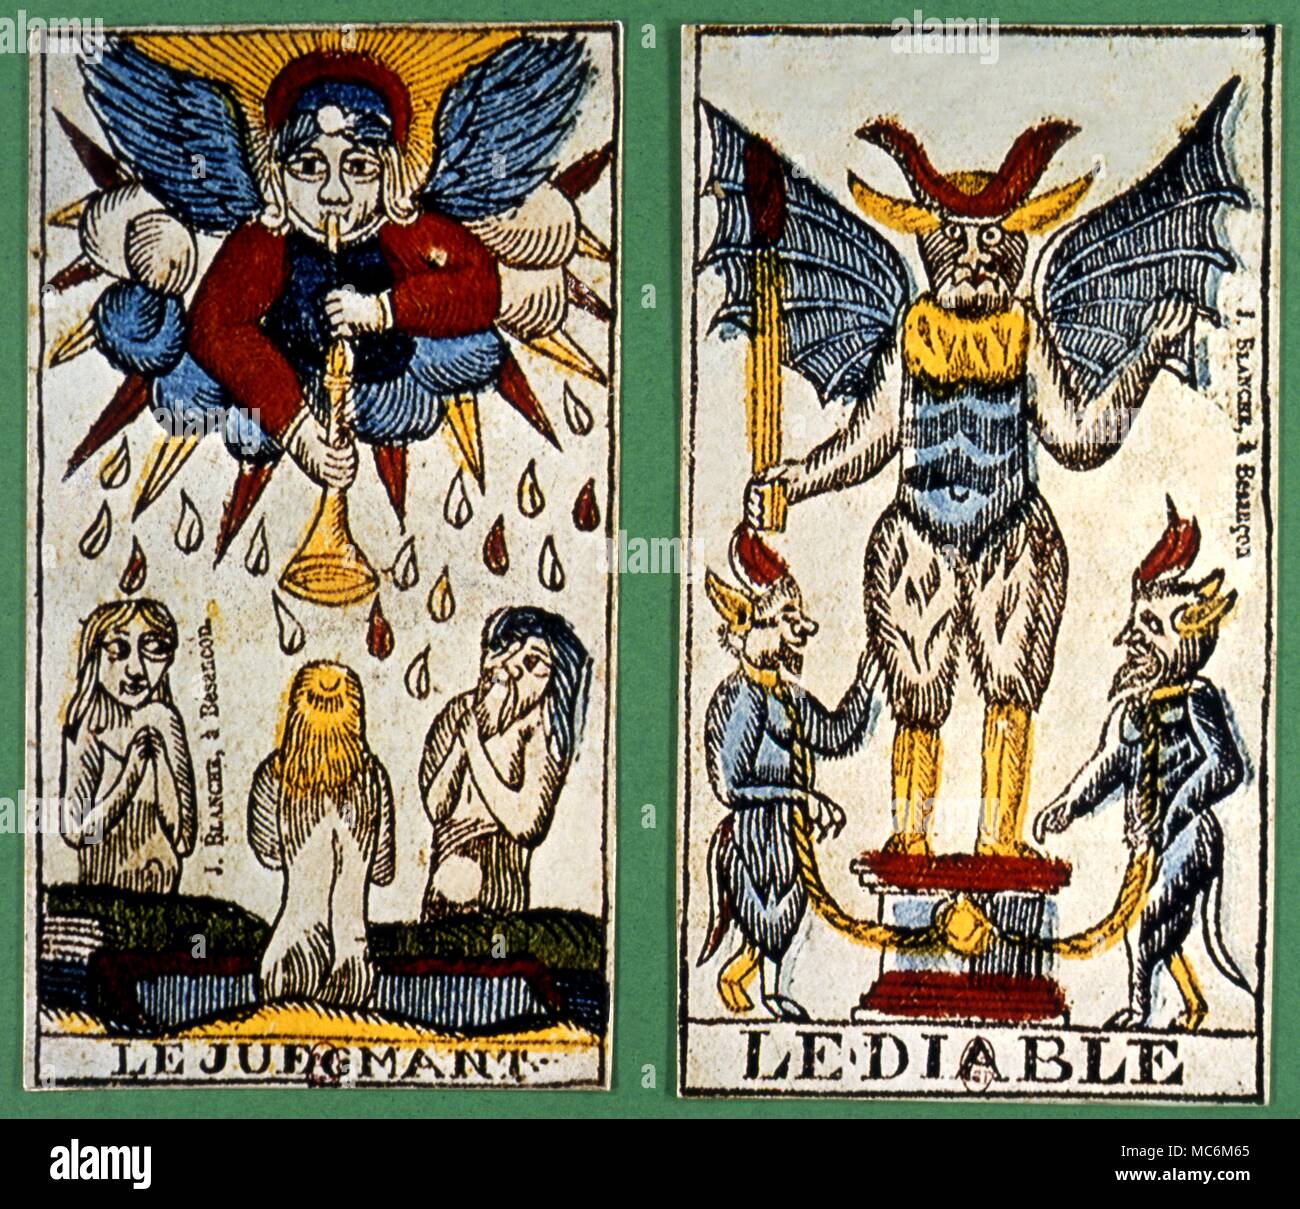 Cartas del Tarot - Arcanos Mayores dos principios siglo seventeeth francés  El Diablo atout Card y la sentencia de una baraja de tarot incompleto  Fotografía de stock - Alamy